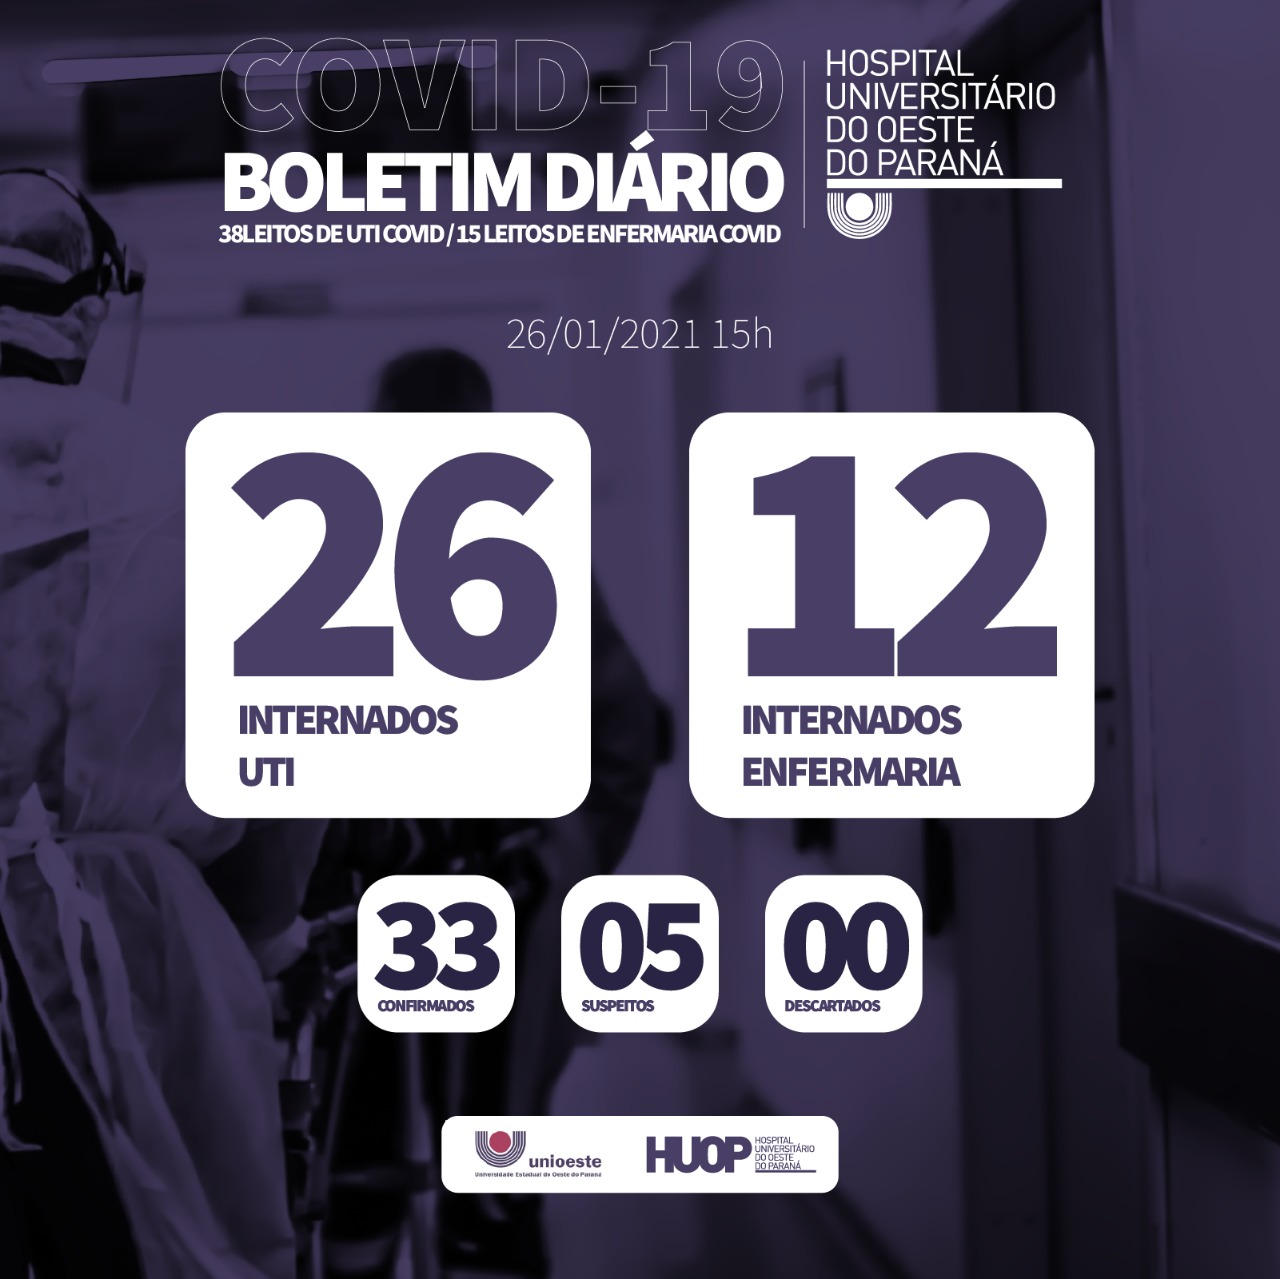 Imagem referente a Boletim informa que 38 pessoas estão internadas na ala Covid-19 do HUOP